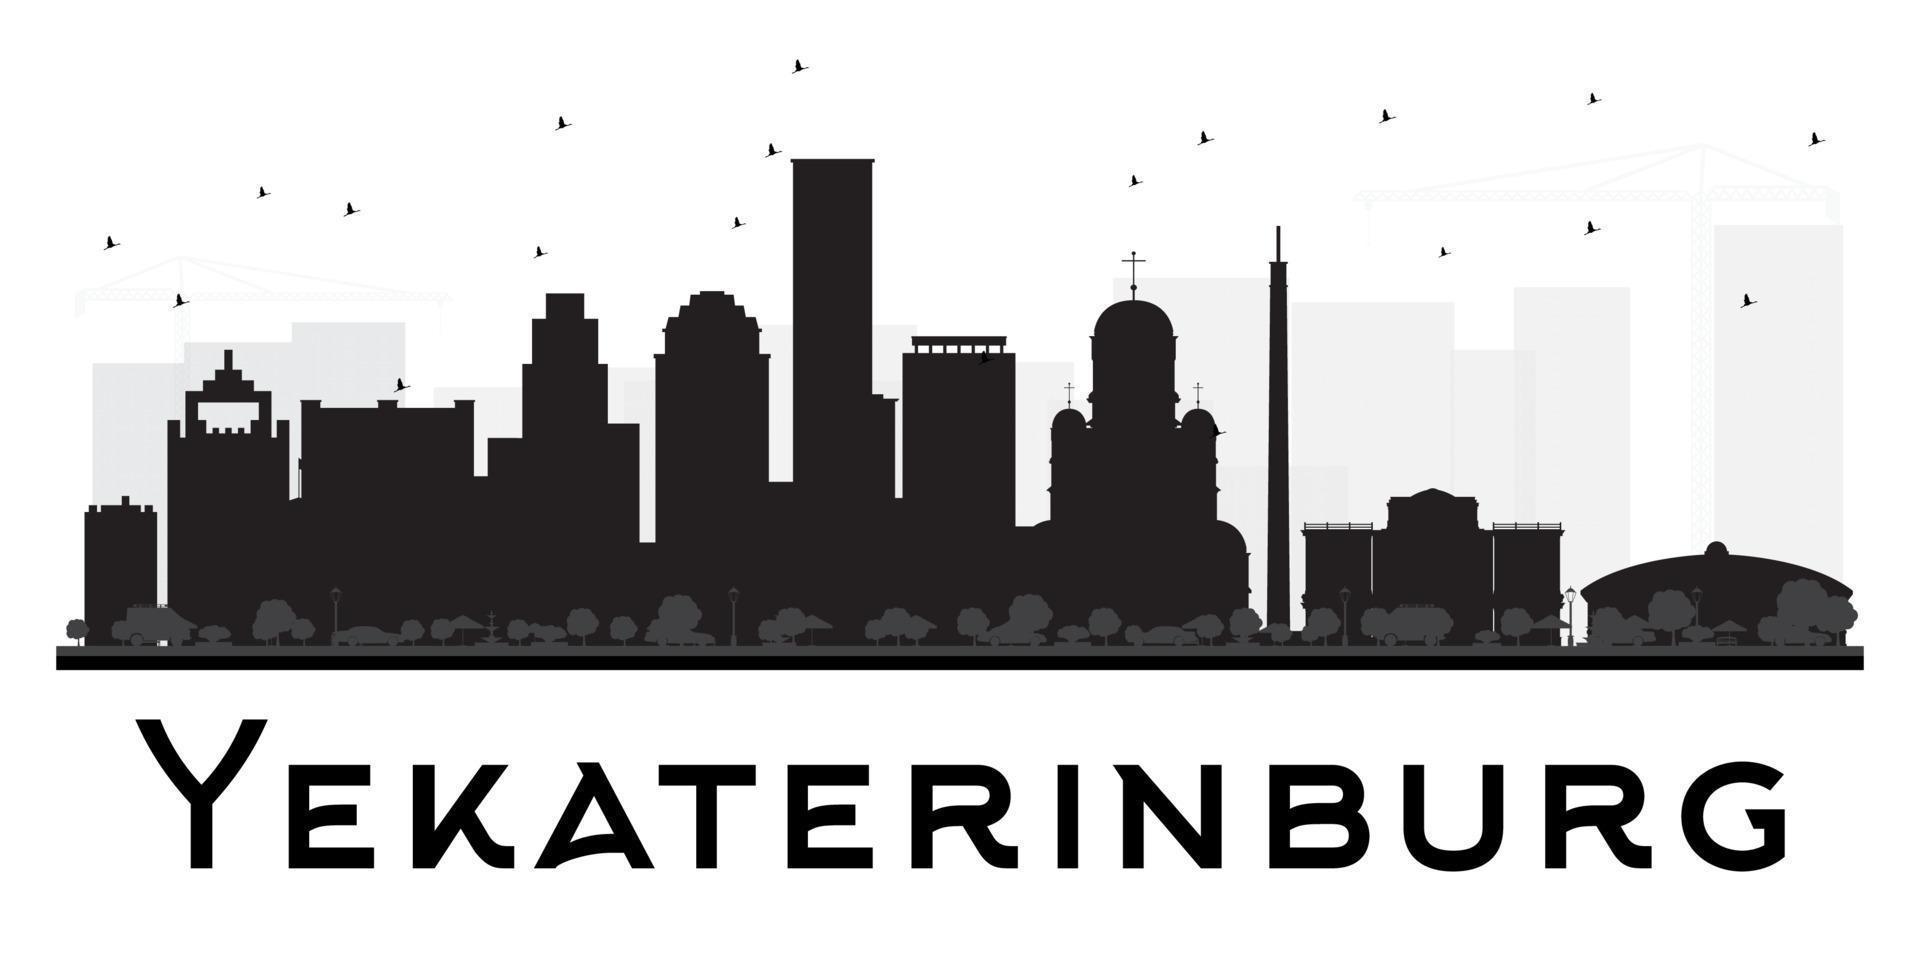 jekaterinenburg stad skyline zwart-wit silhouet. vector